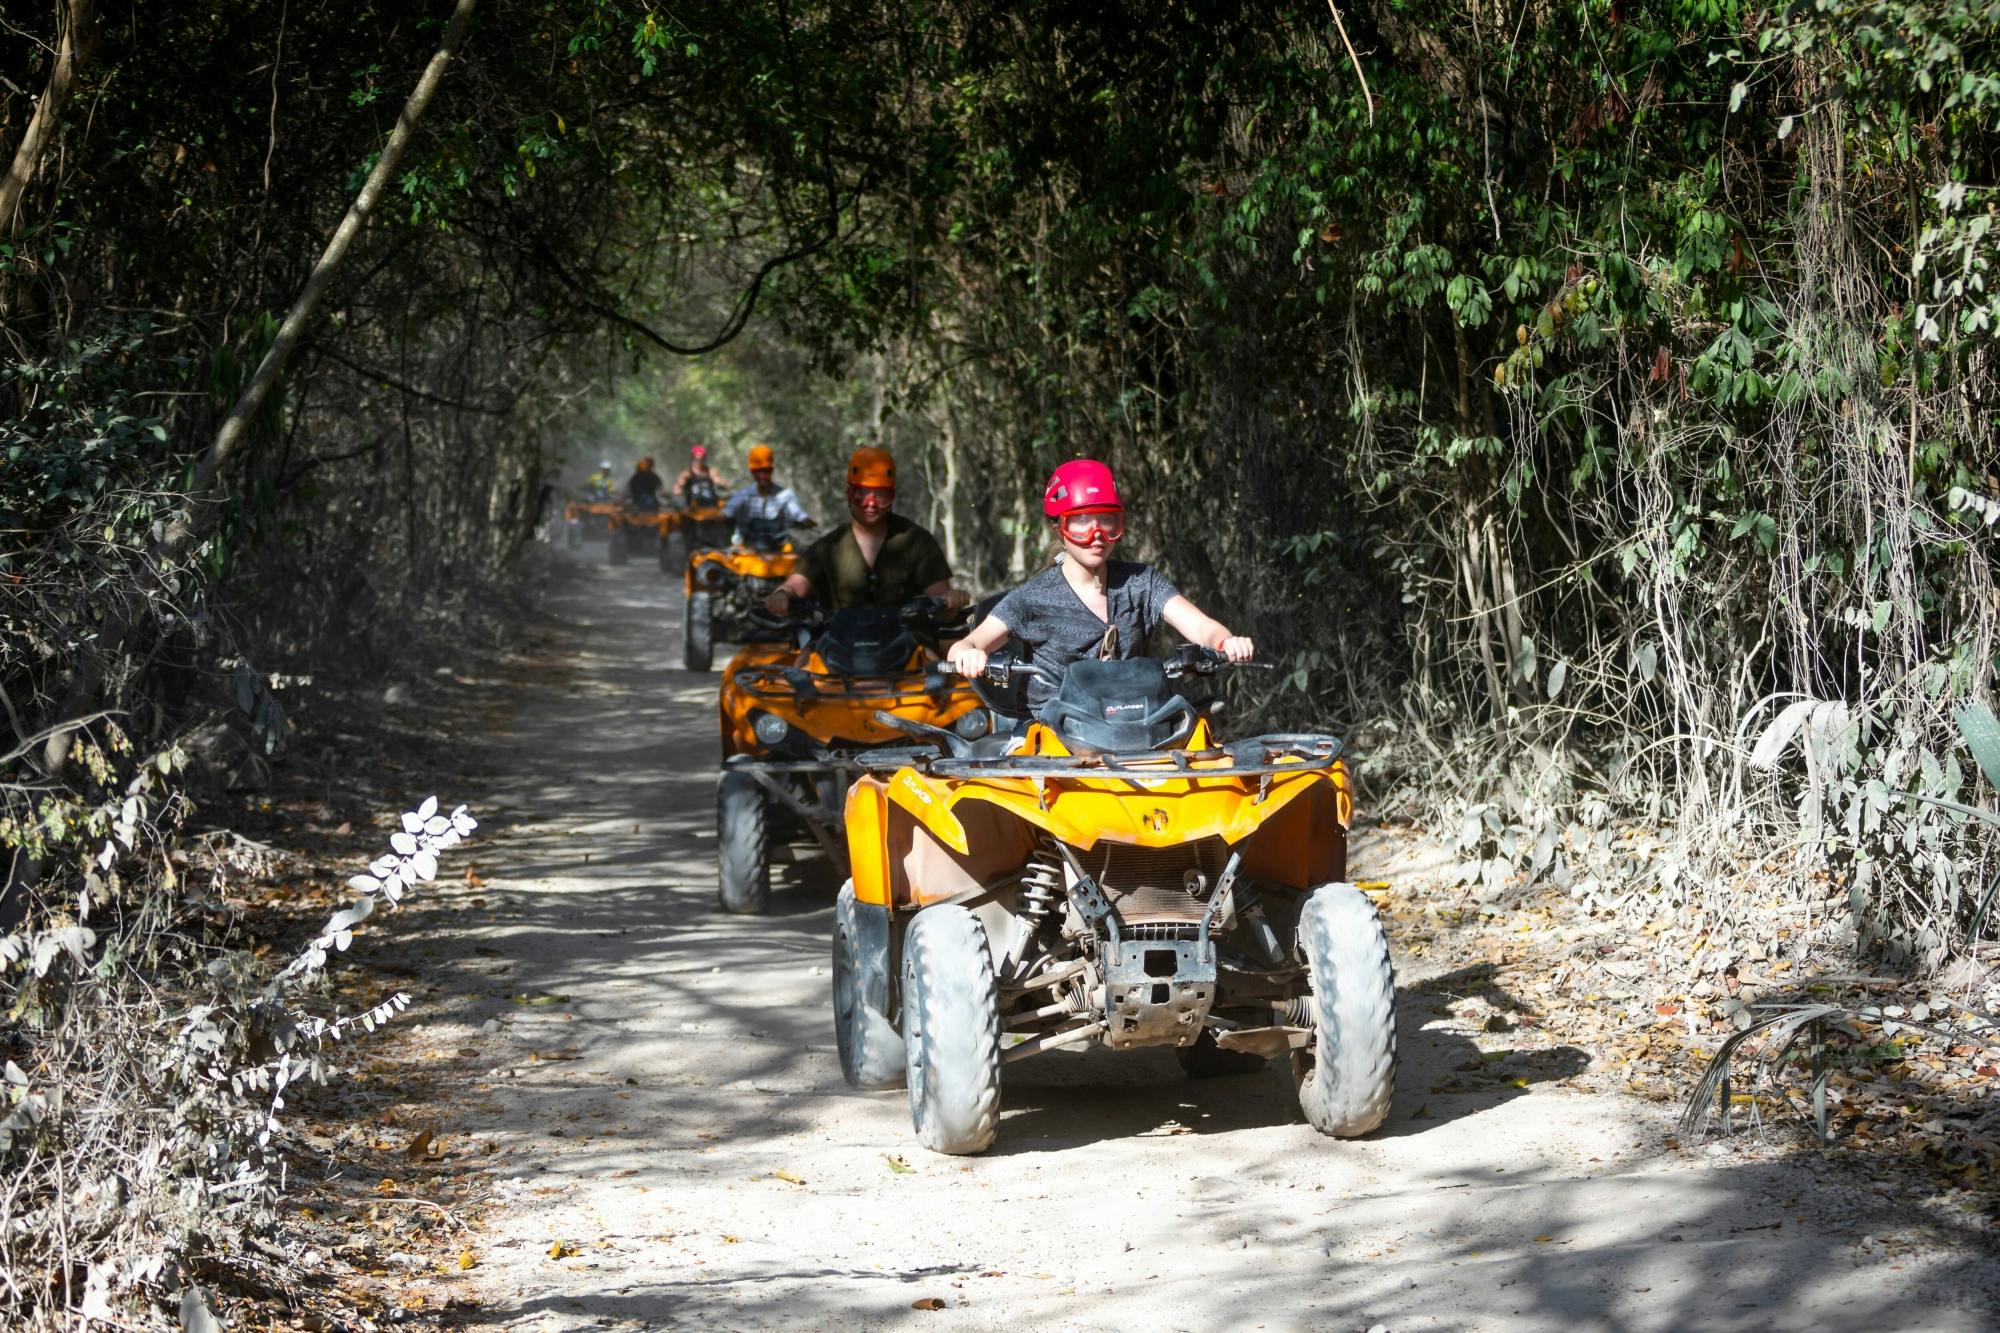 ATV-tur, bading i en cenote og katamarancruise fra Cancun med lunsj